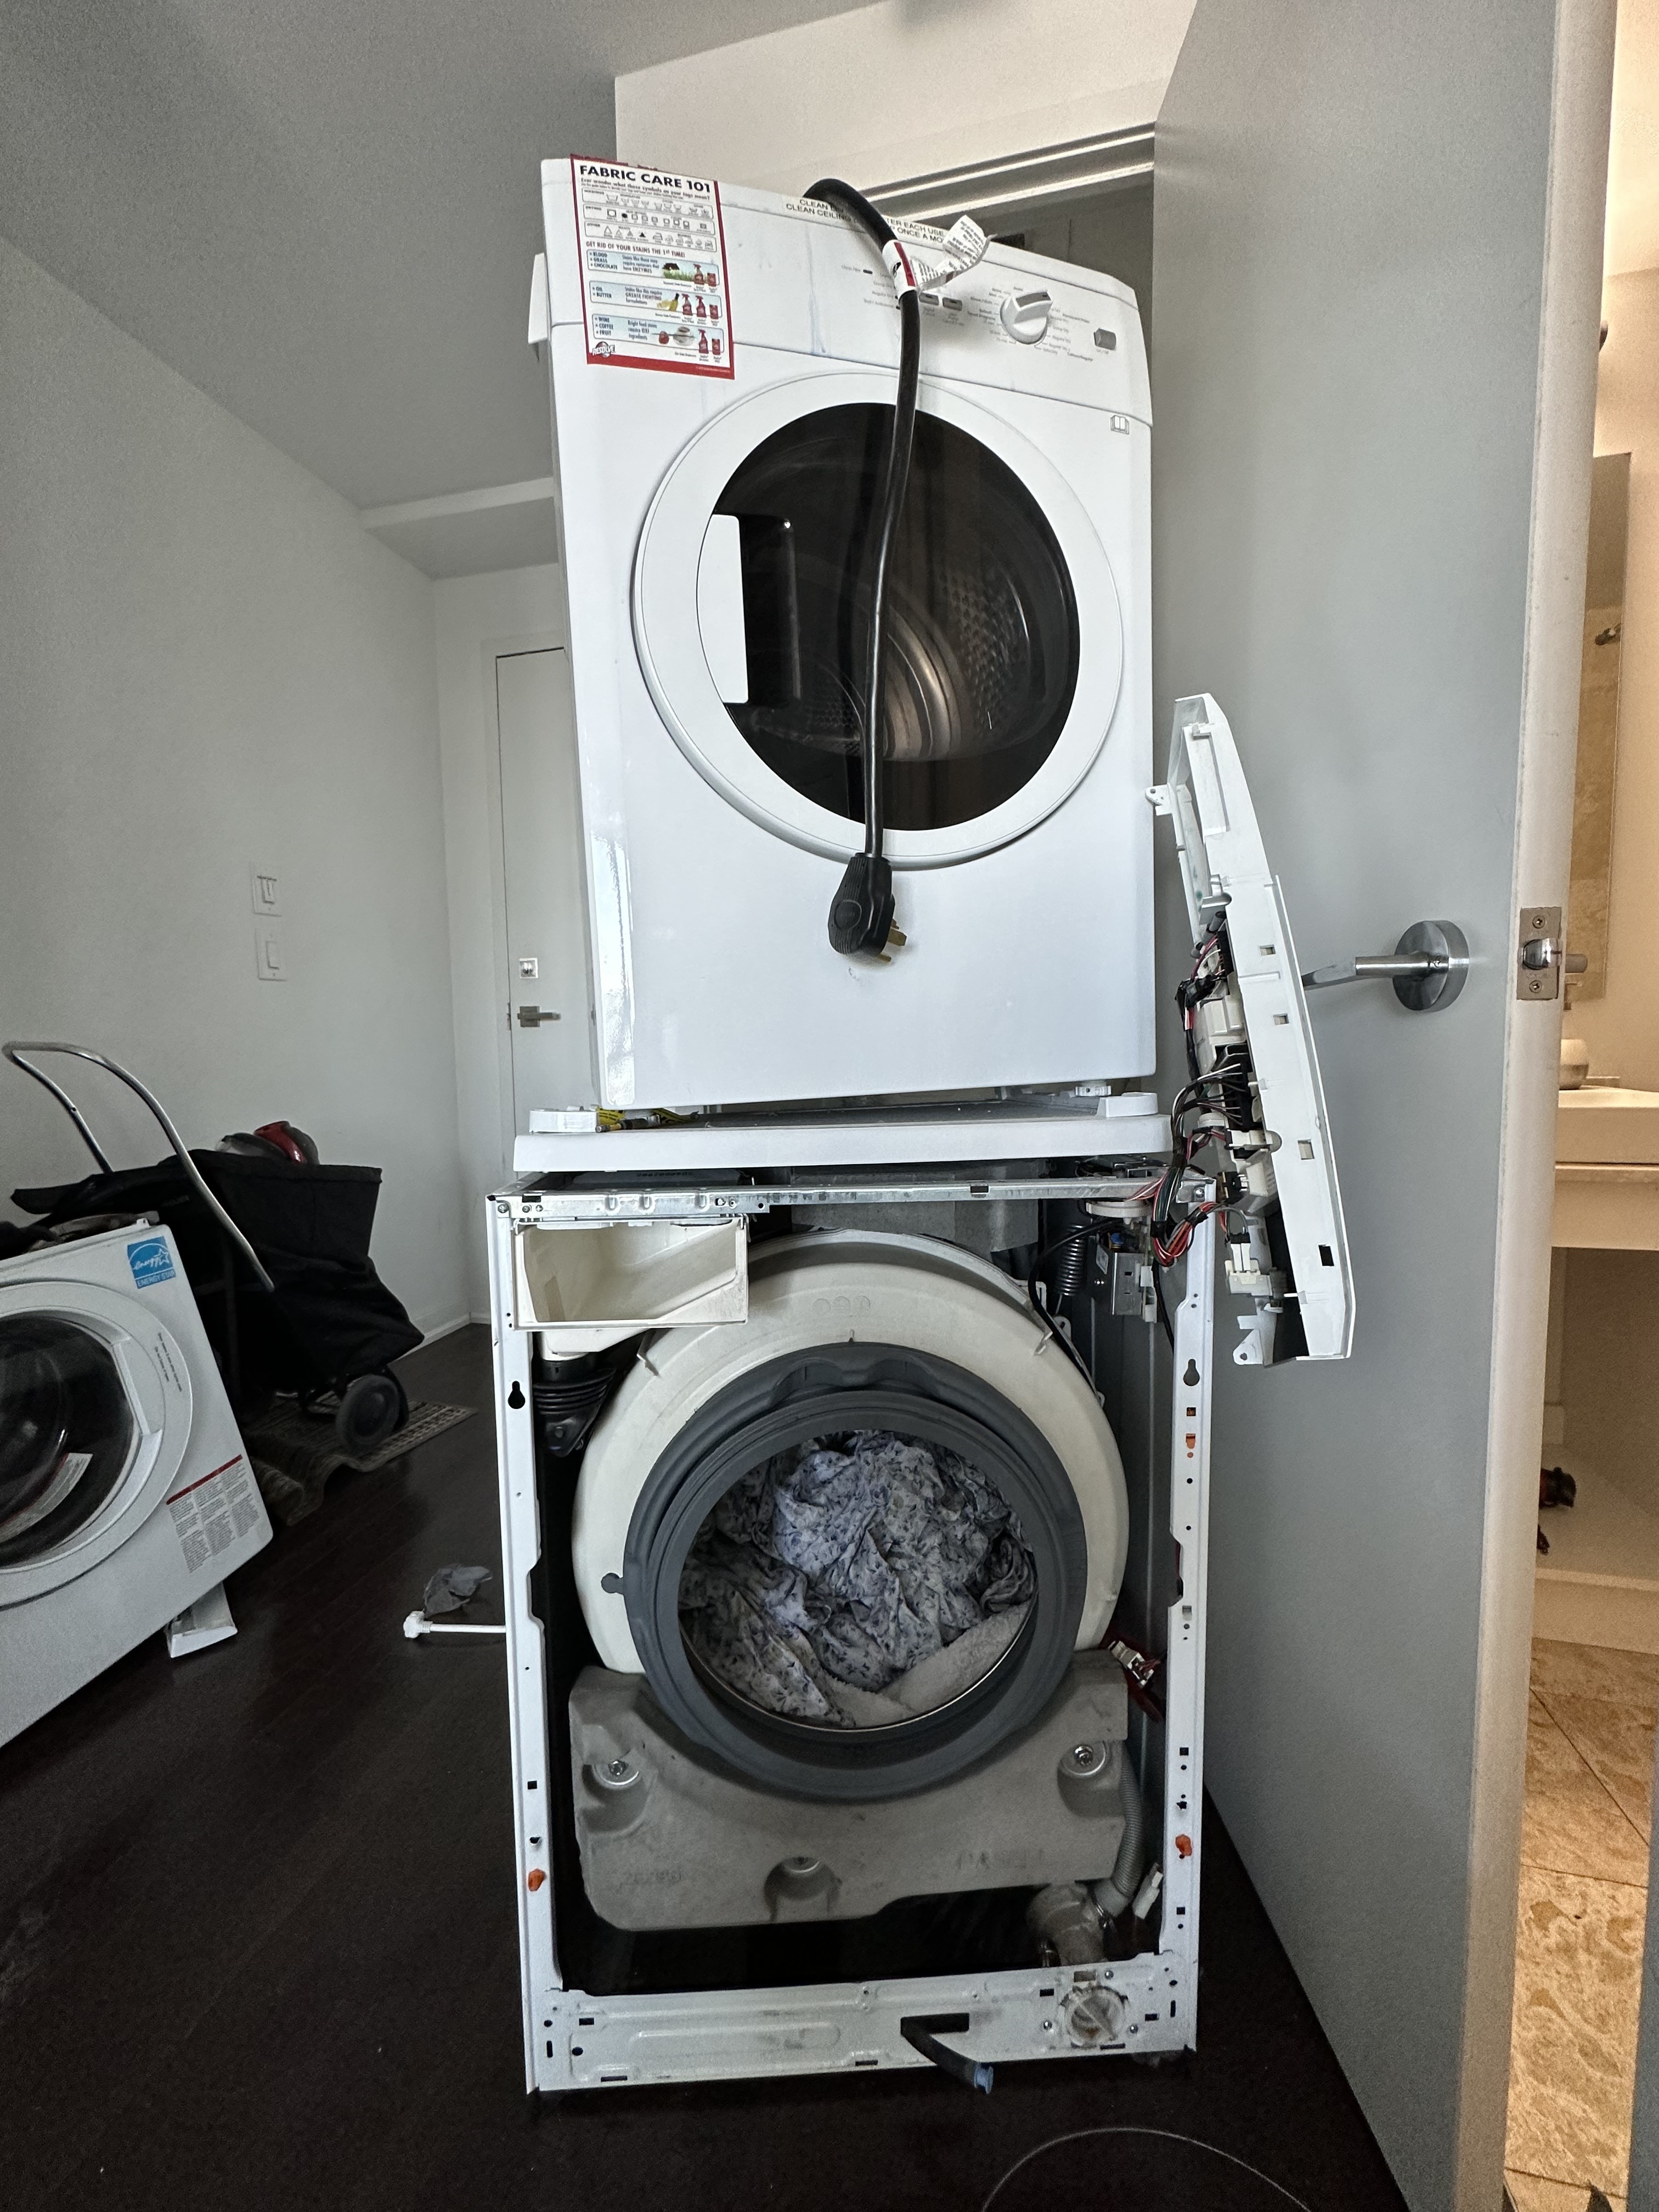 Washing machine stopped draining - urgently needs professional help!